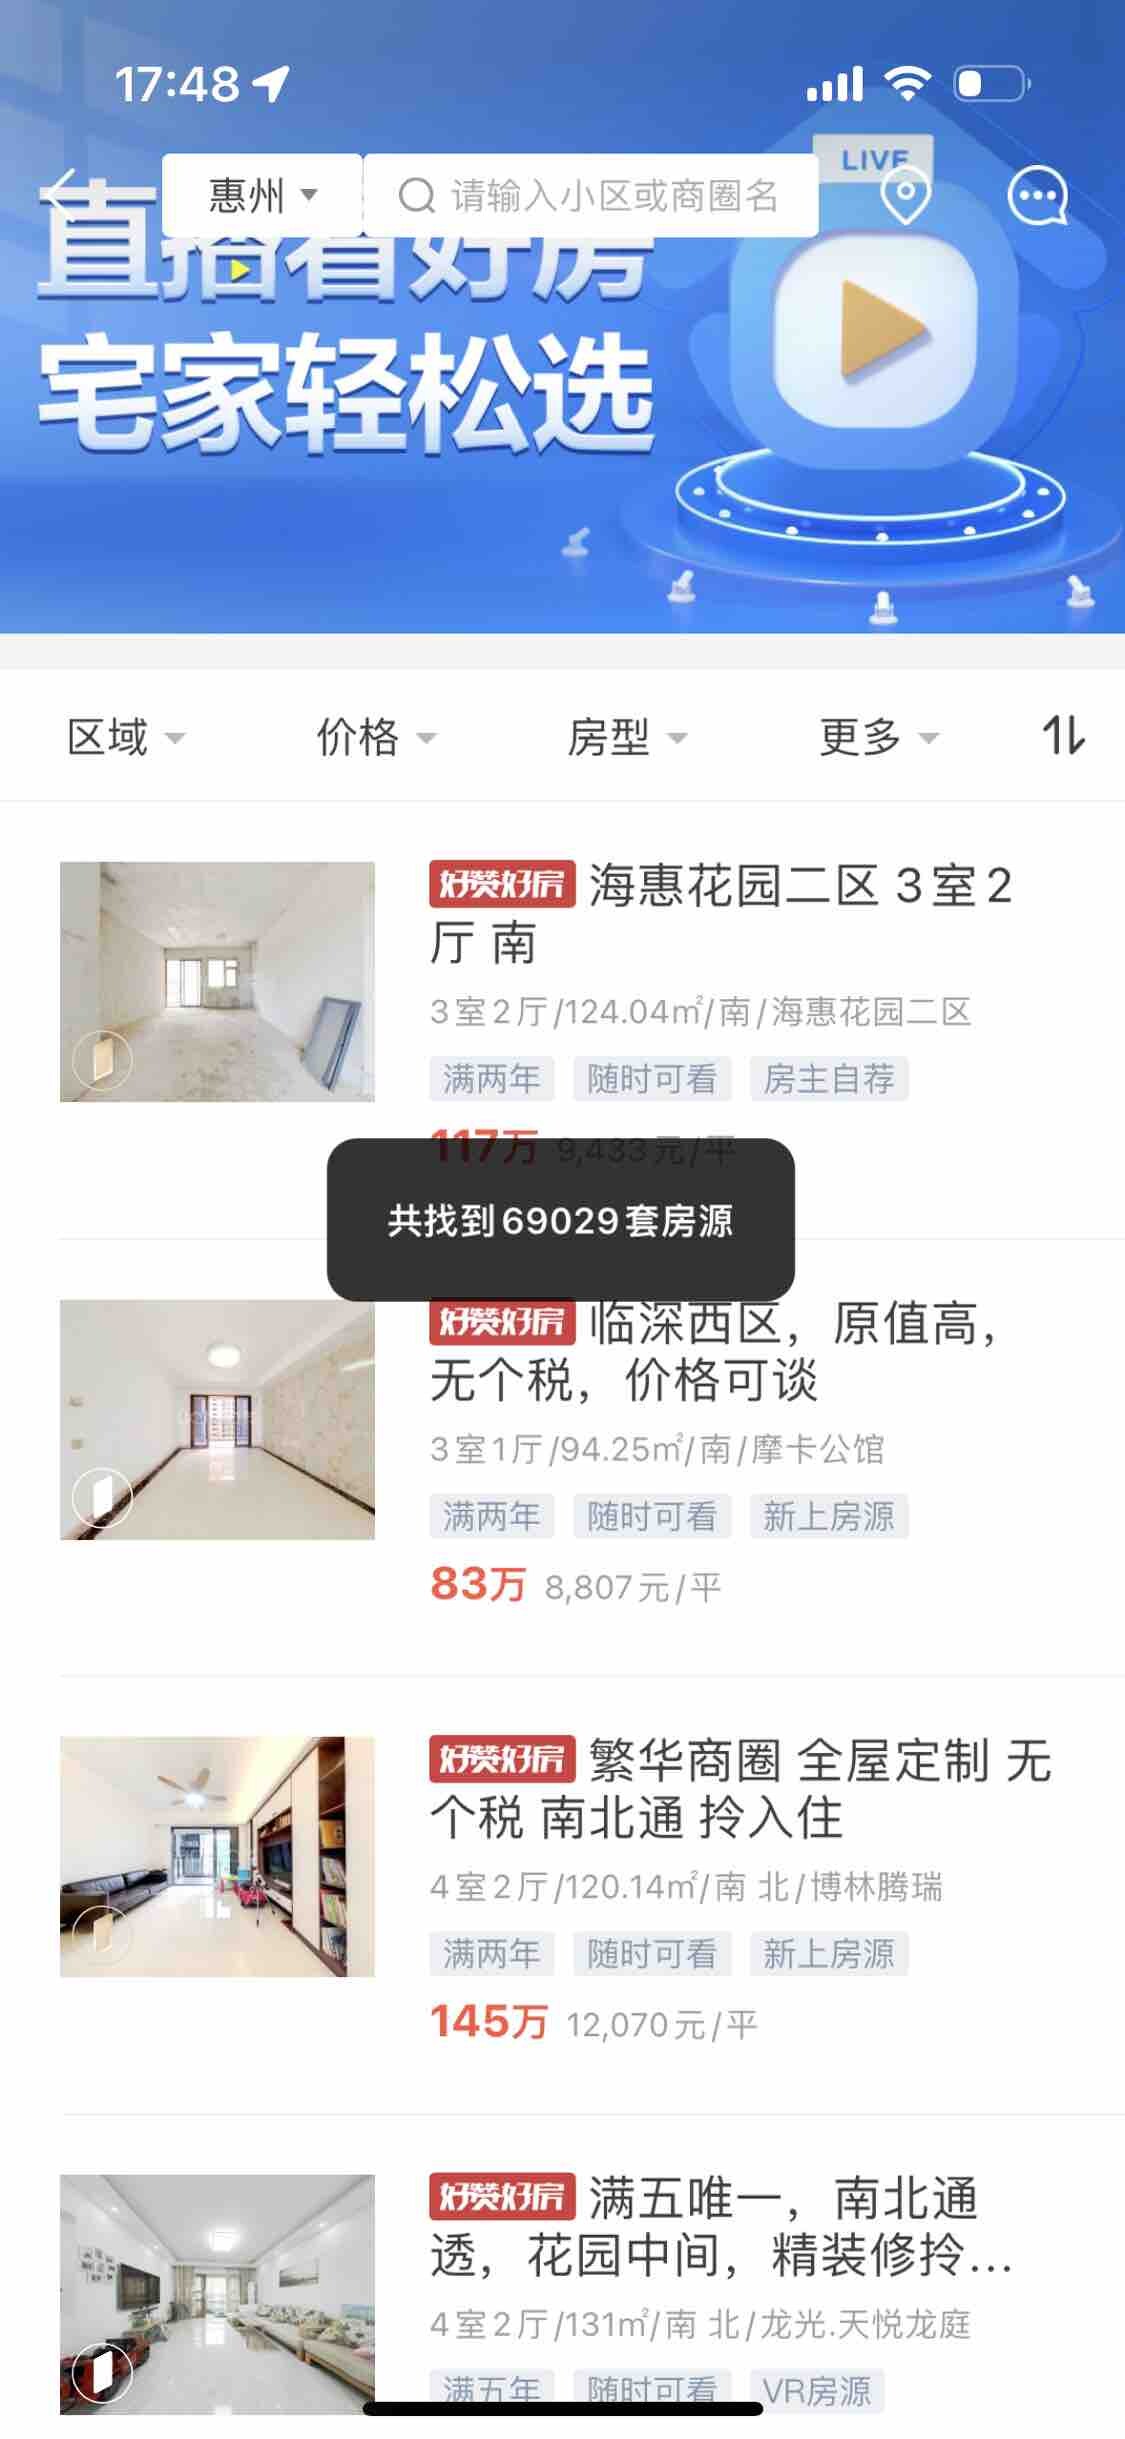 回答有一点臊的问题:4 月惠州还剩几套二手房？还能卖几个月？